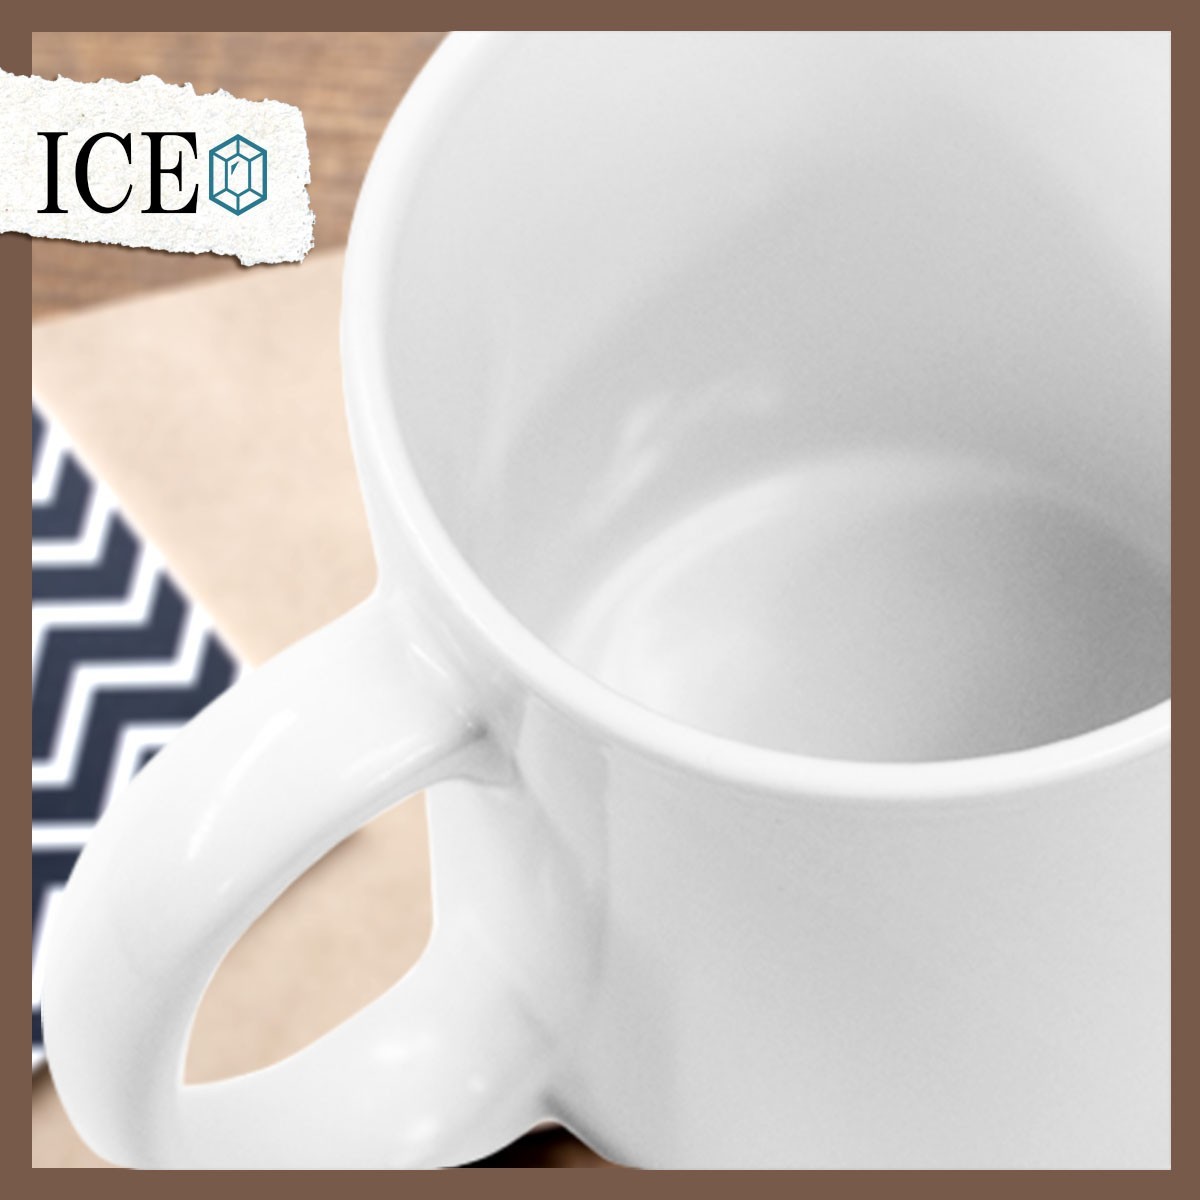 レトロな玄関マット おもしろ マグカップ コップ 陶器 可愛い かわいい 白 シンプル かわいい カッコイイ シュール 面白い ジョーク ゆるい_画像5